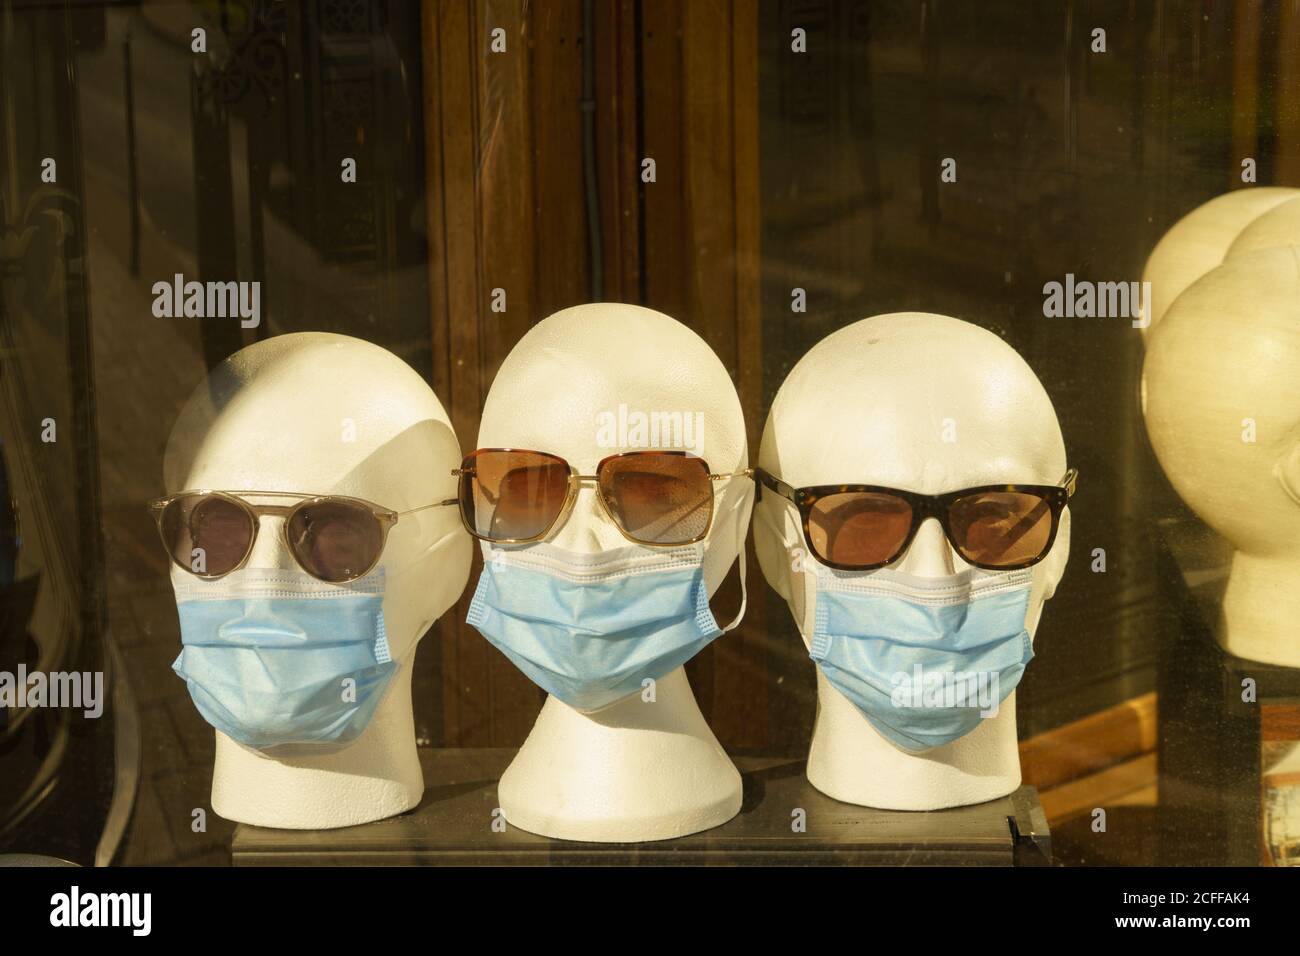 Une vitrine d'un opticien présente des répliques blanches de têtes avec des  lunettes de soleil et des masques faciaux, Harrogate, North Yorkshire,  Angleterre, Royaume-Uni Photo Stock - Alamy